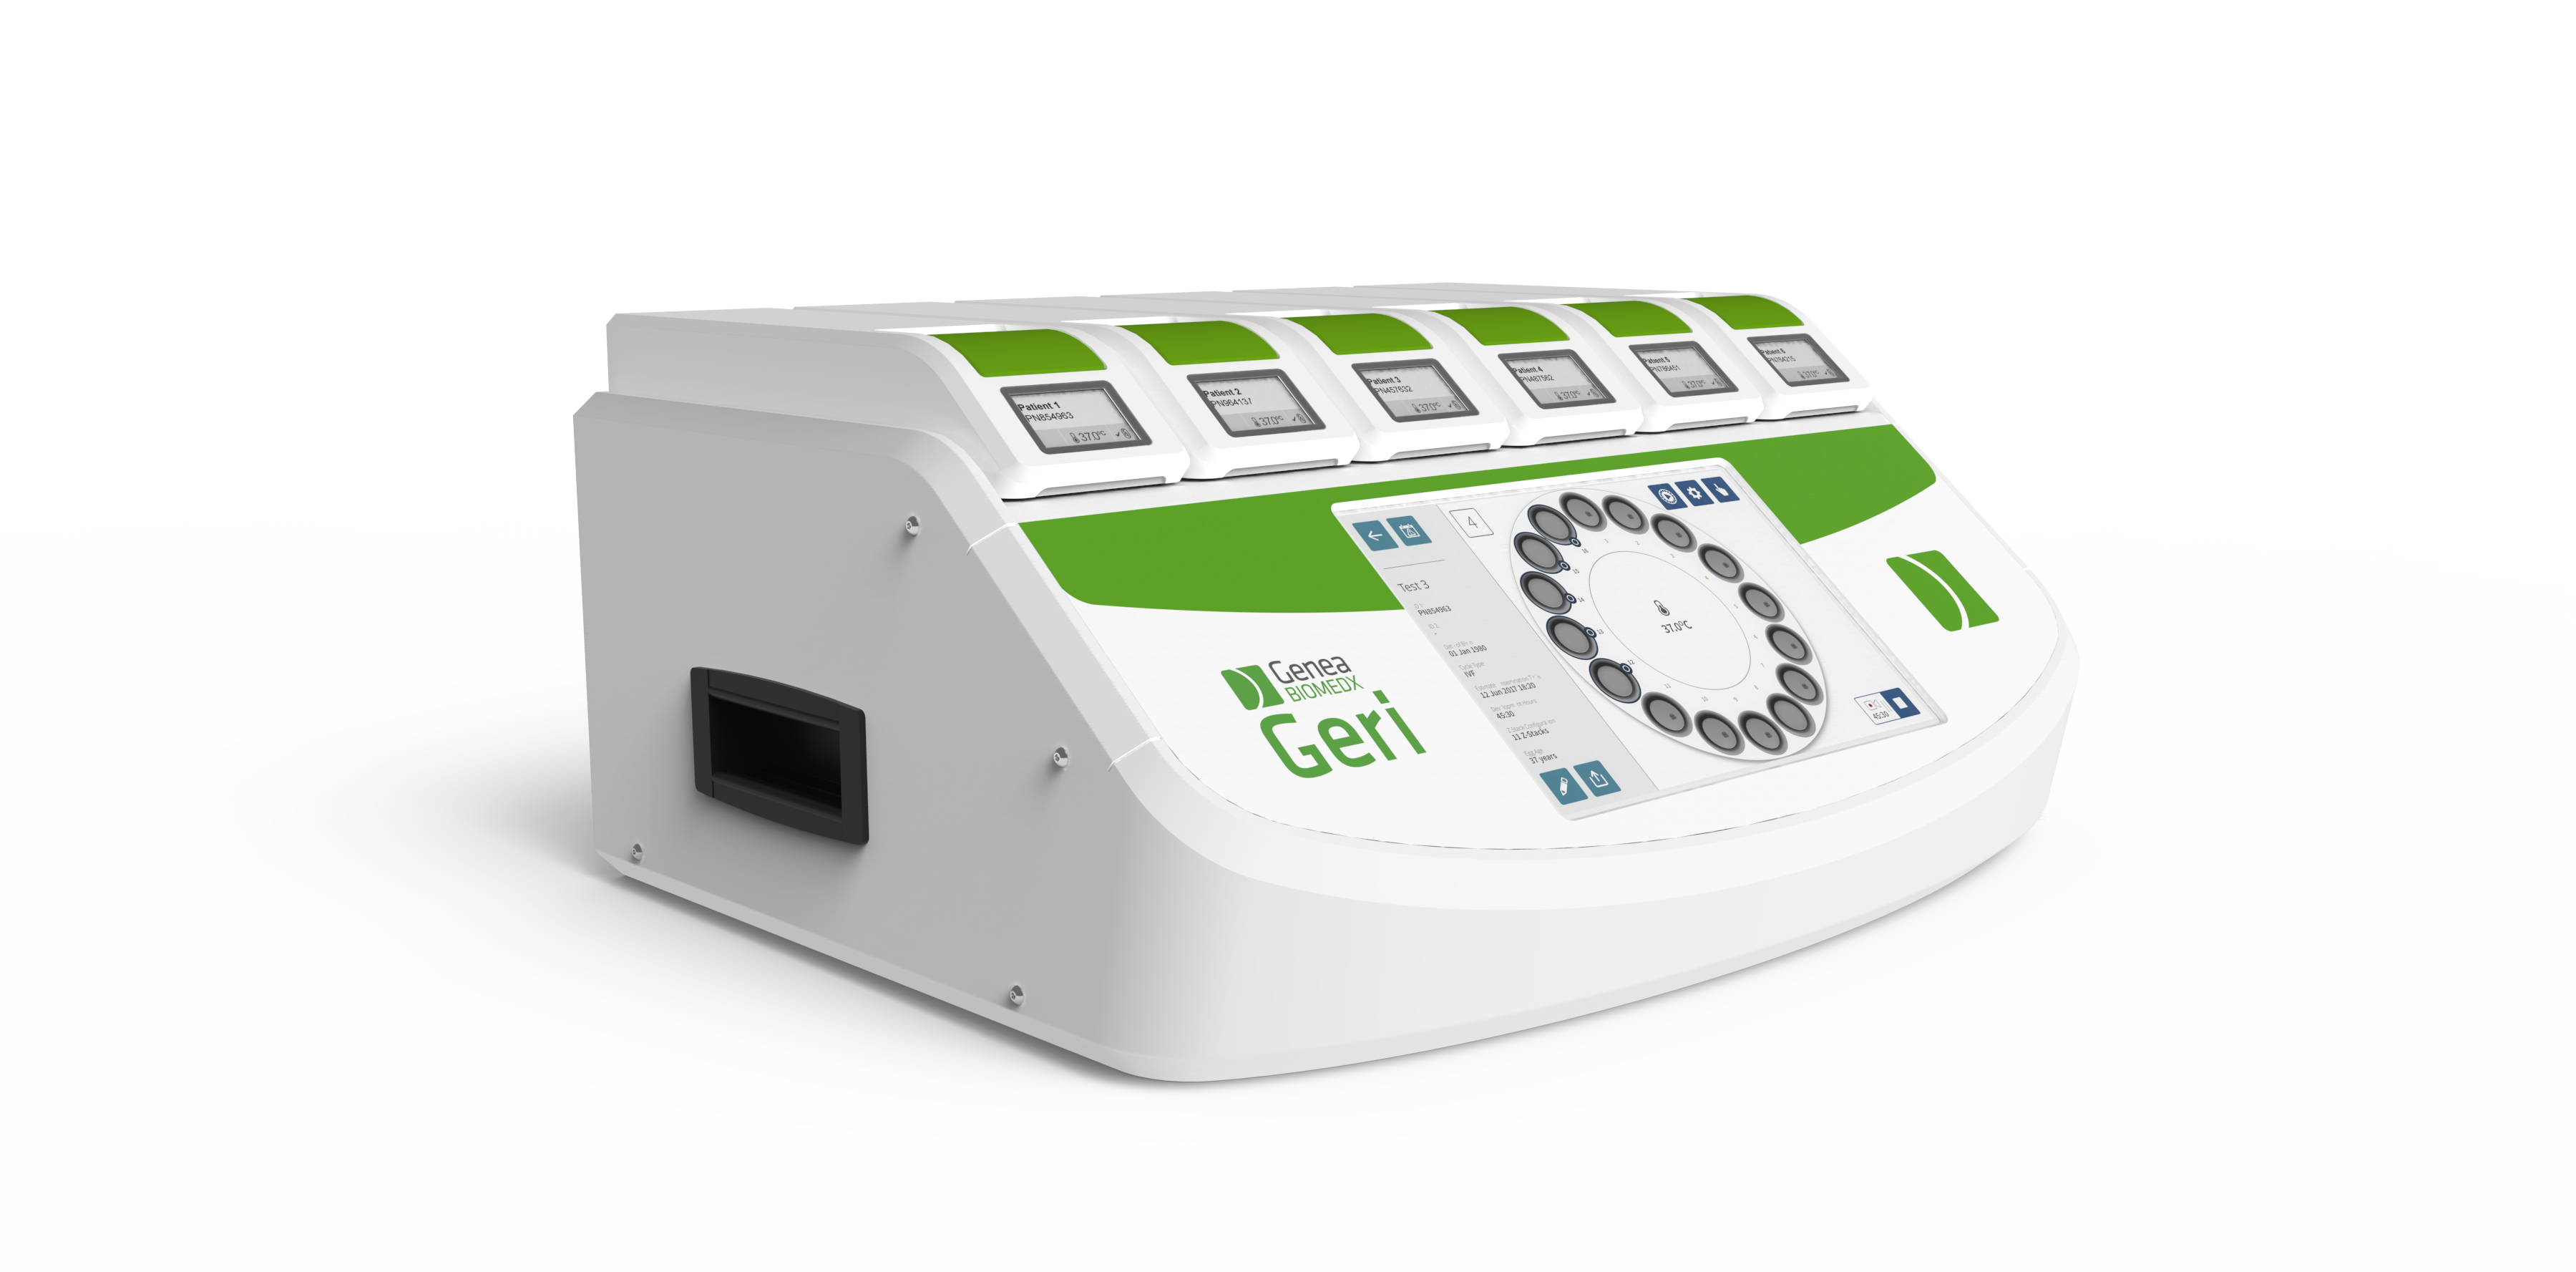 IERA pone al disposición de sus pacientes la última tecnología en incubadores.